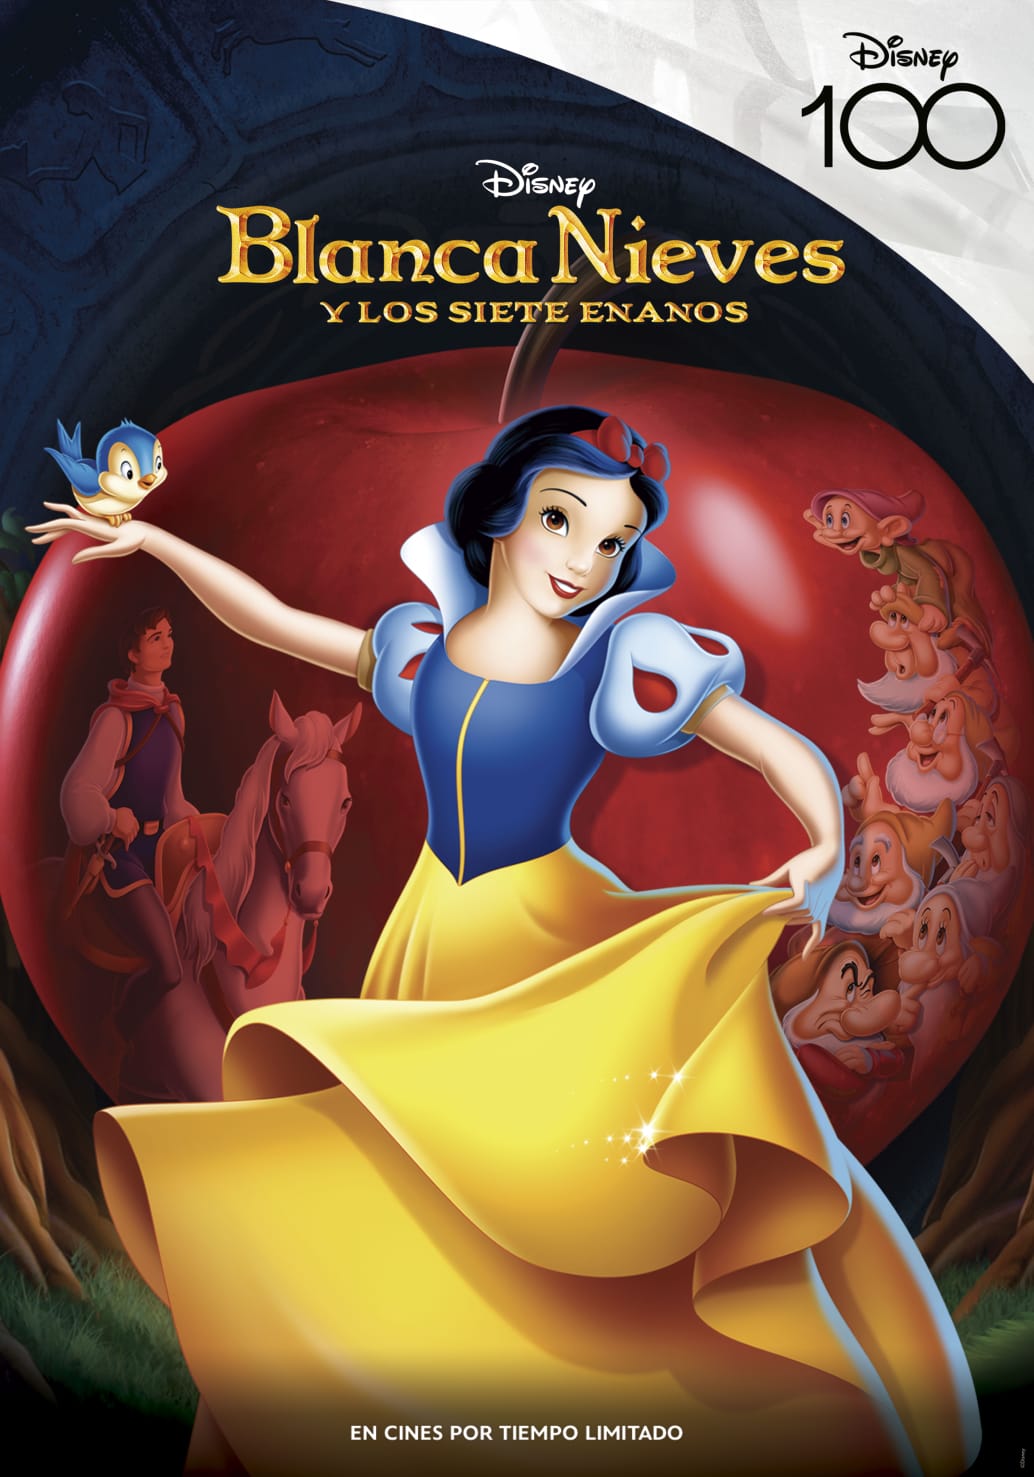 Los clásicos animados de Disney regresan a cines para celebrar su 100° Aniversario 22